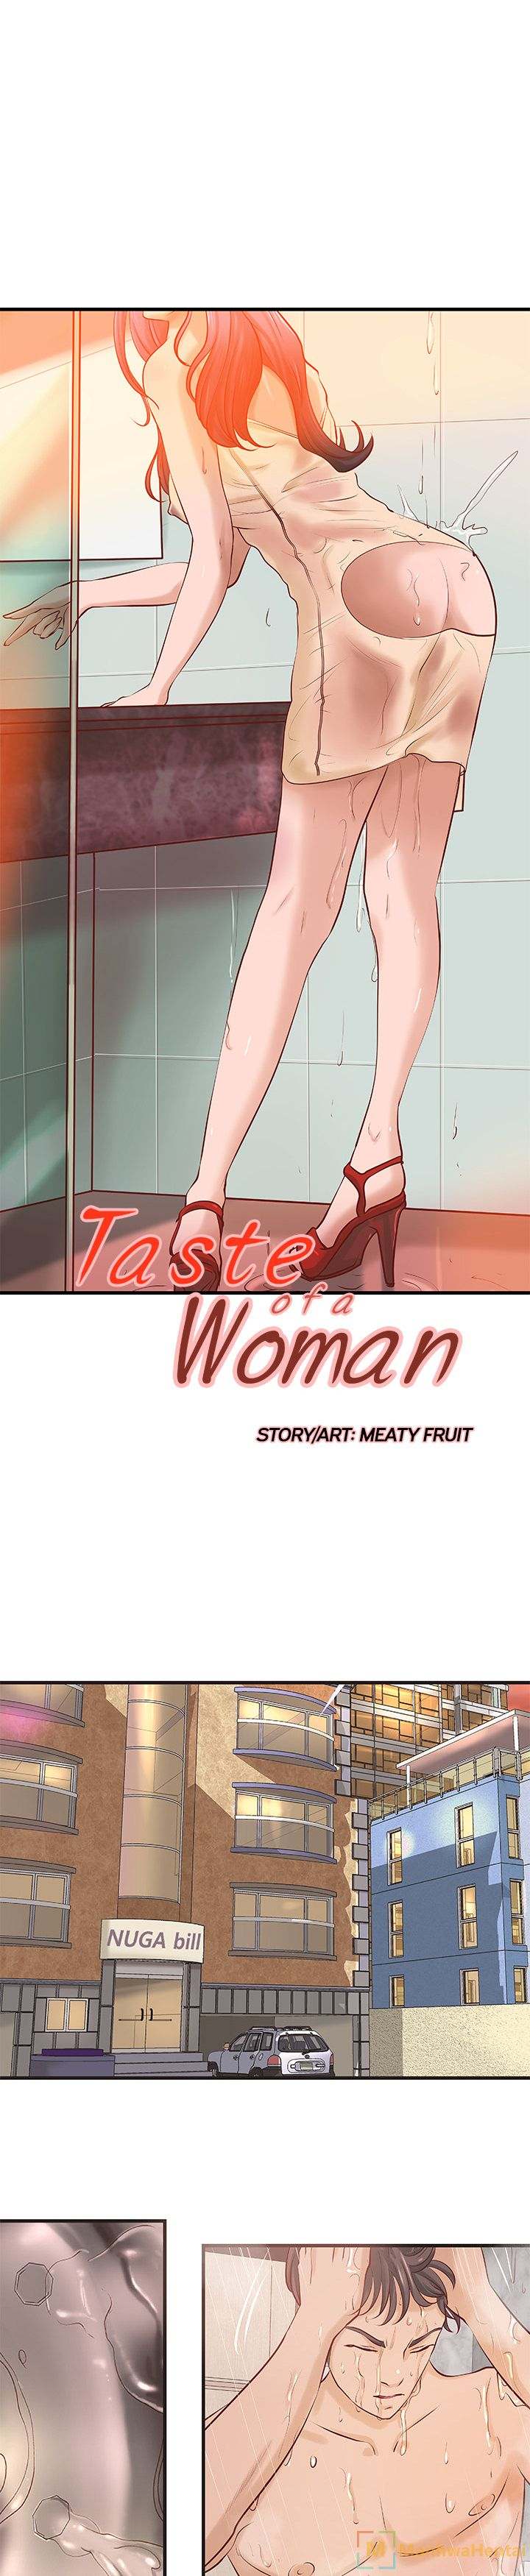 Watch image manhwa Taste Of A Woman - Chapter 20 - auTroePPonnspgU - ManhwaXX.net